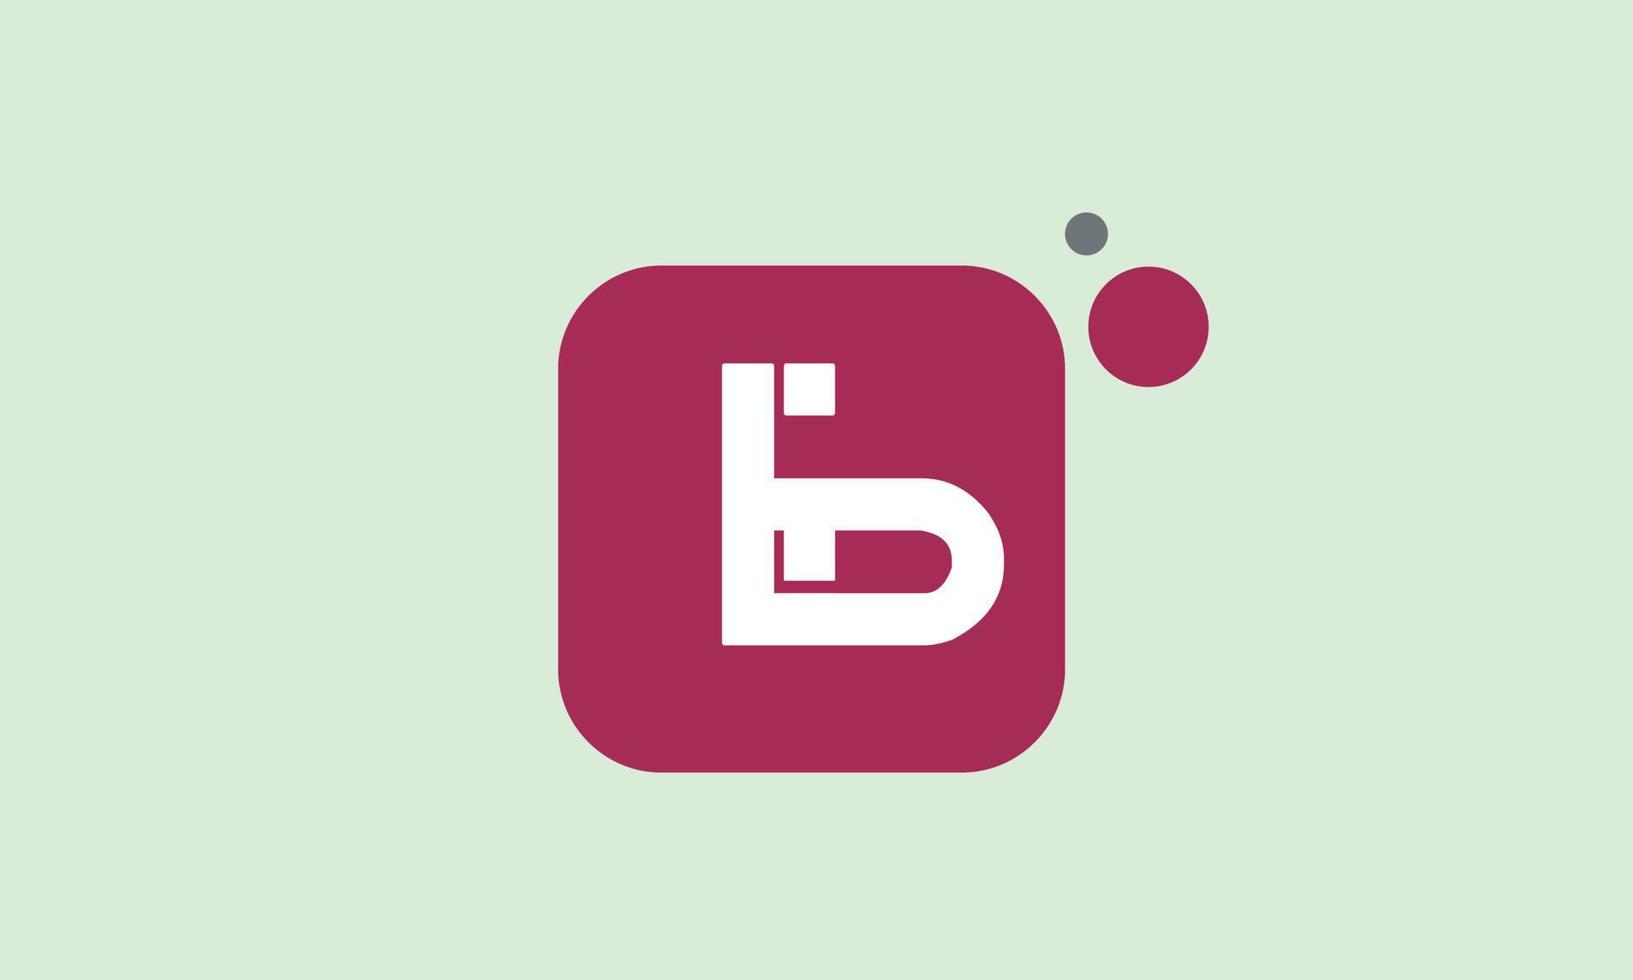 alphabet buchstaben initialen monogramm logo eb, be, e und b vektor